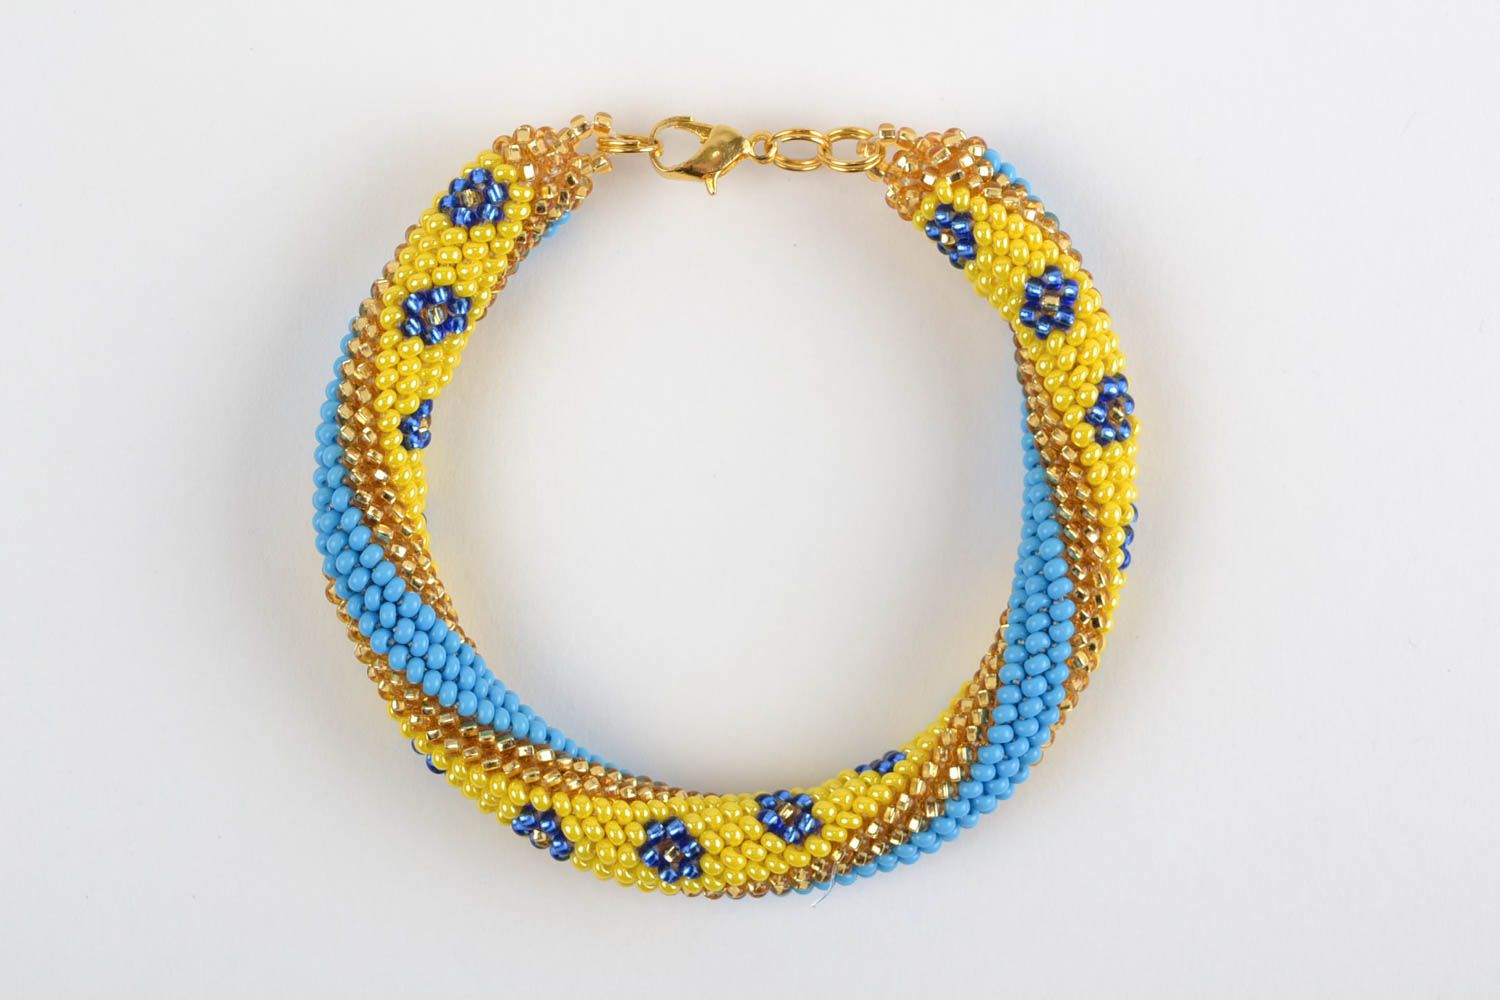 Наручный браслет из бисера ручной работы в виде жгута желтый с голубым фото 4